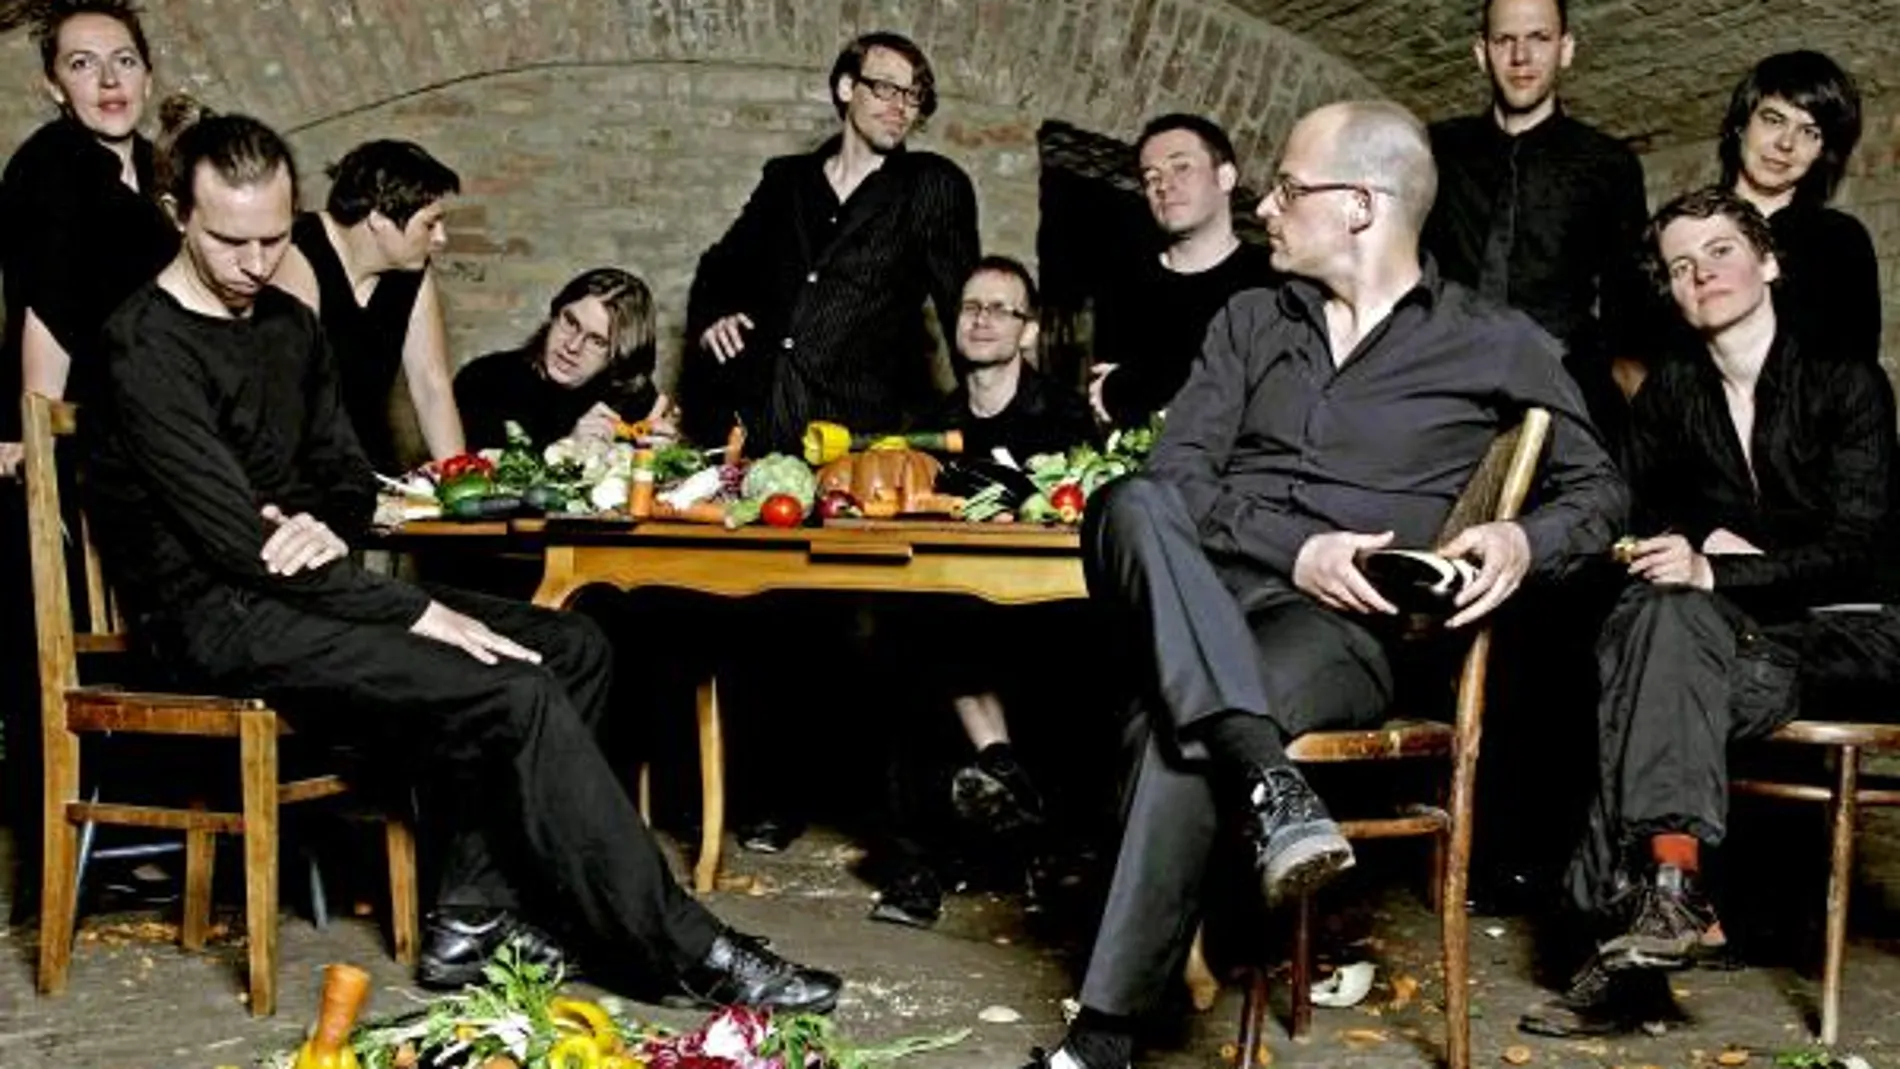 los 11 integrantes de la "Orquesta de las verduras